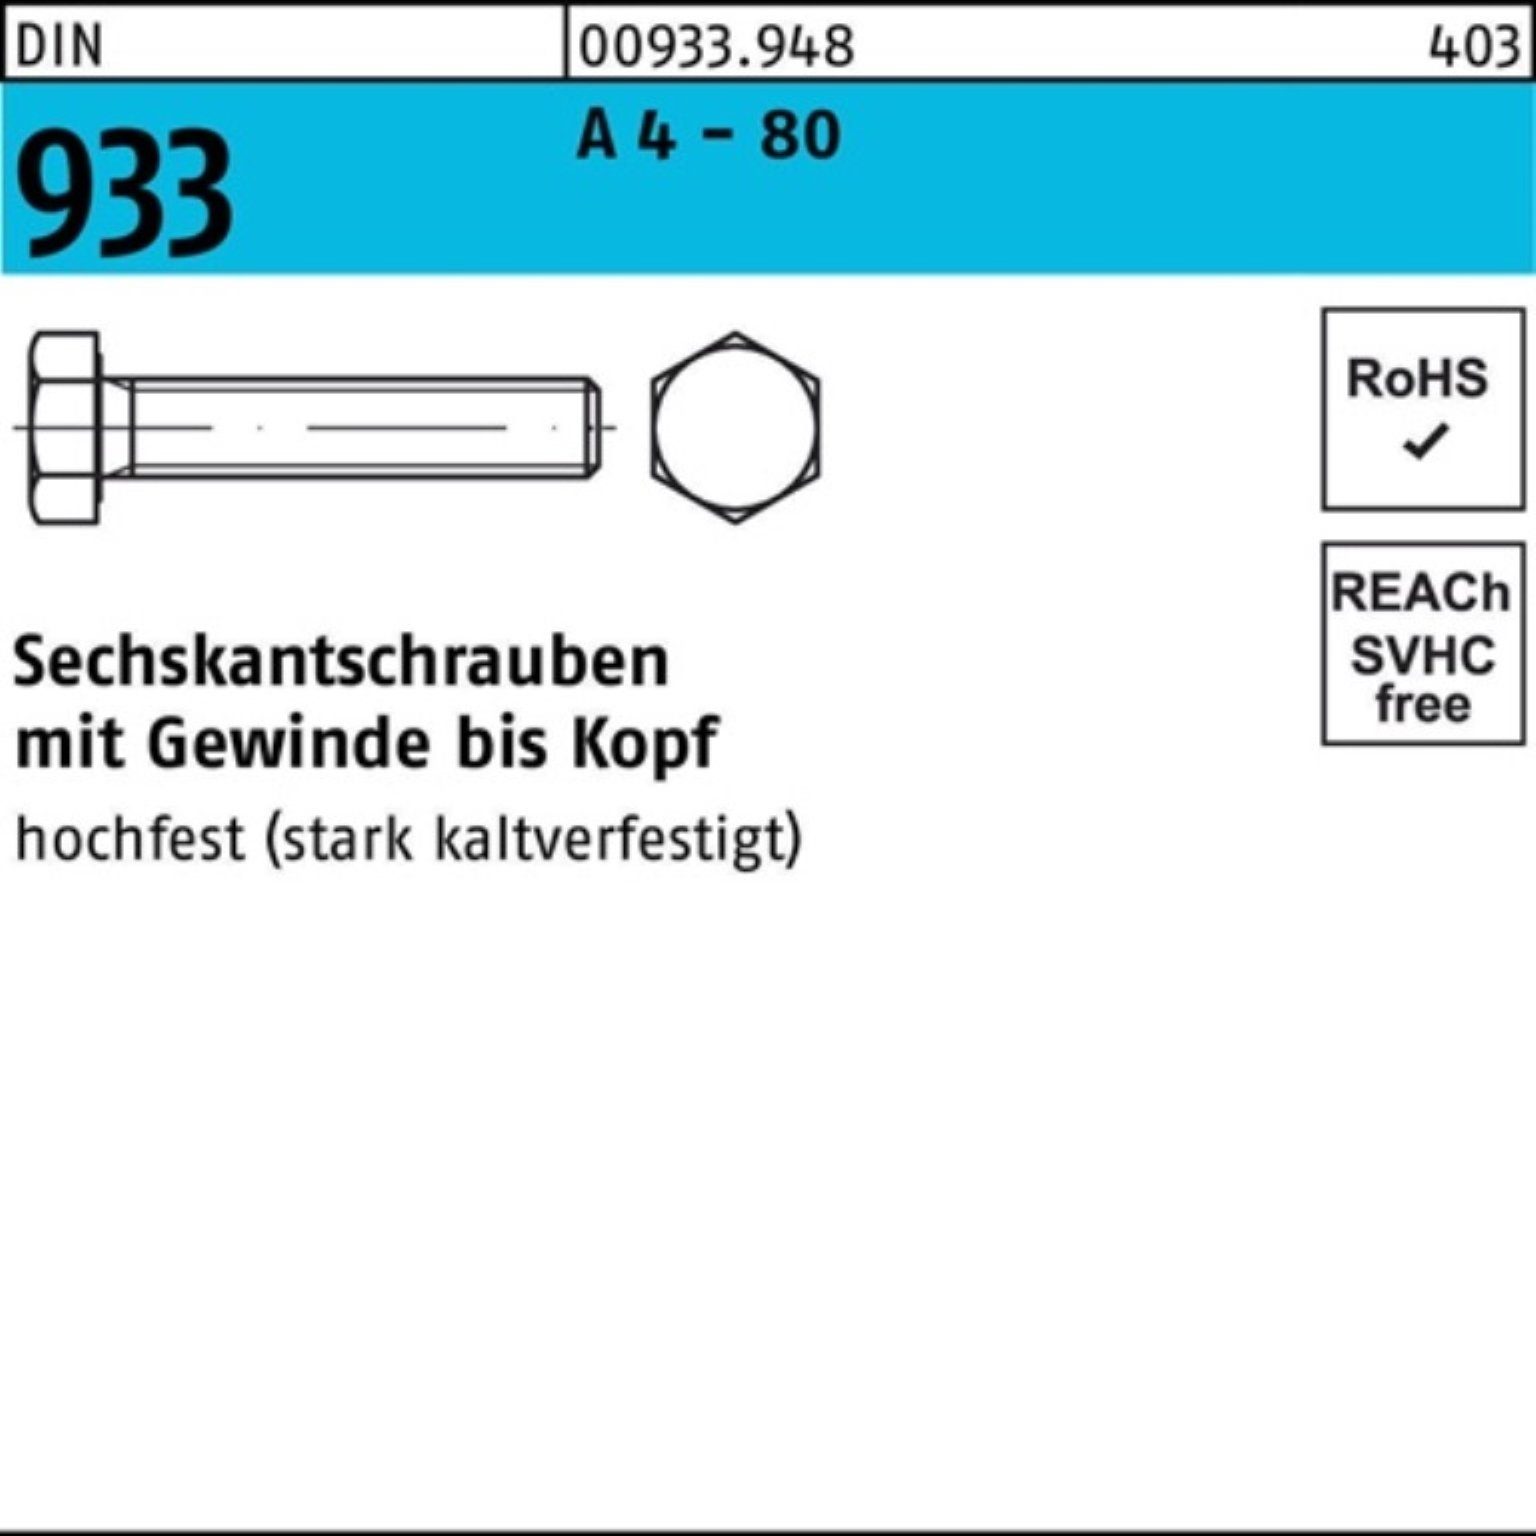 Reyher Sechskantschraube 100er Pack Sechskantschraube DIN 933 VG M6x 30 A 4 - 80 100 Stück DIN